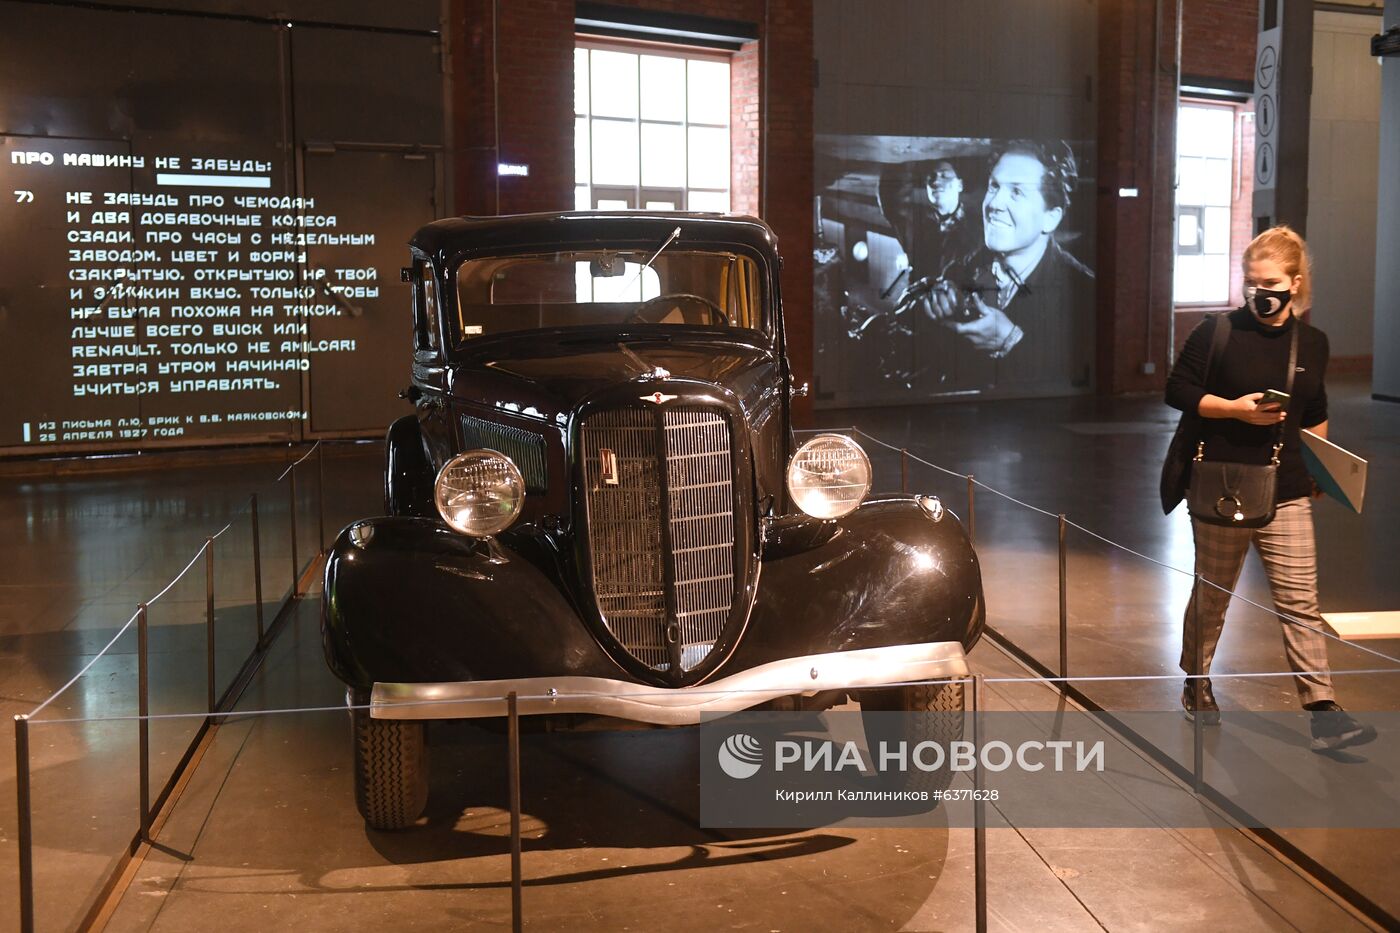 Выставка "Дом для машин. Бахметьевский и другие гаражи" в Москве